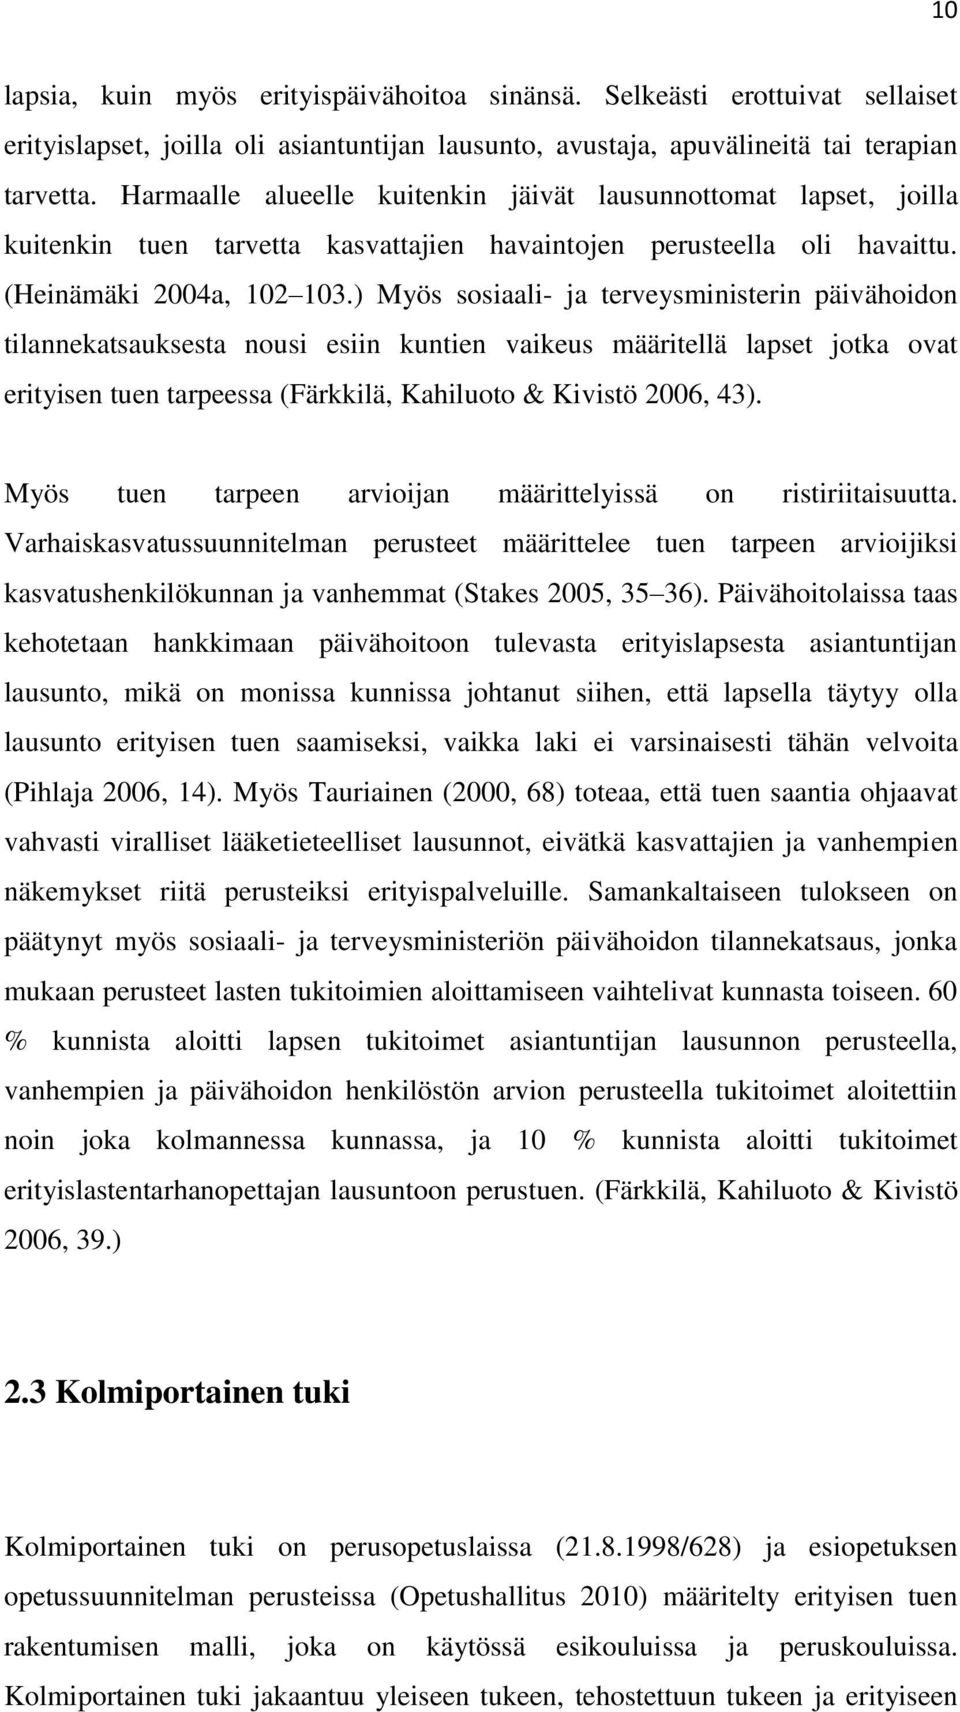 ) Myös sosiaali- ja terveysministerin päivähoidon tilannekatsauksesta nousi esiin kuntien vaikeus määritellä lapset jotka ovat erityisen tuen tarpeessa (Färkkilä, Kahiluoto & Kivistö 2006, 43).